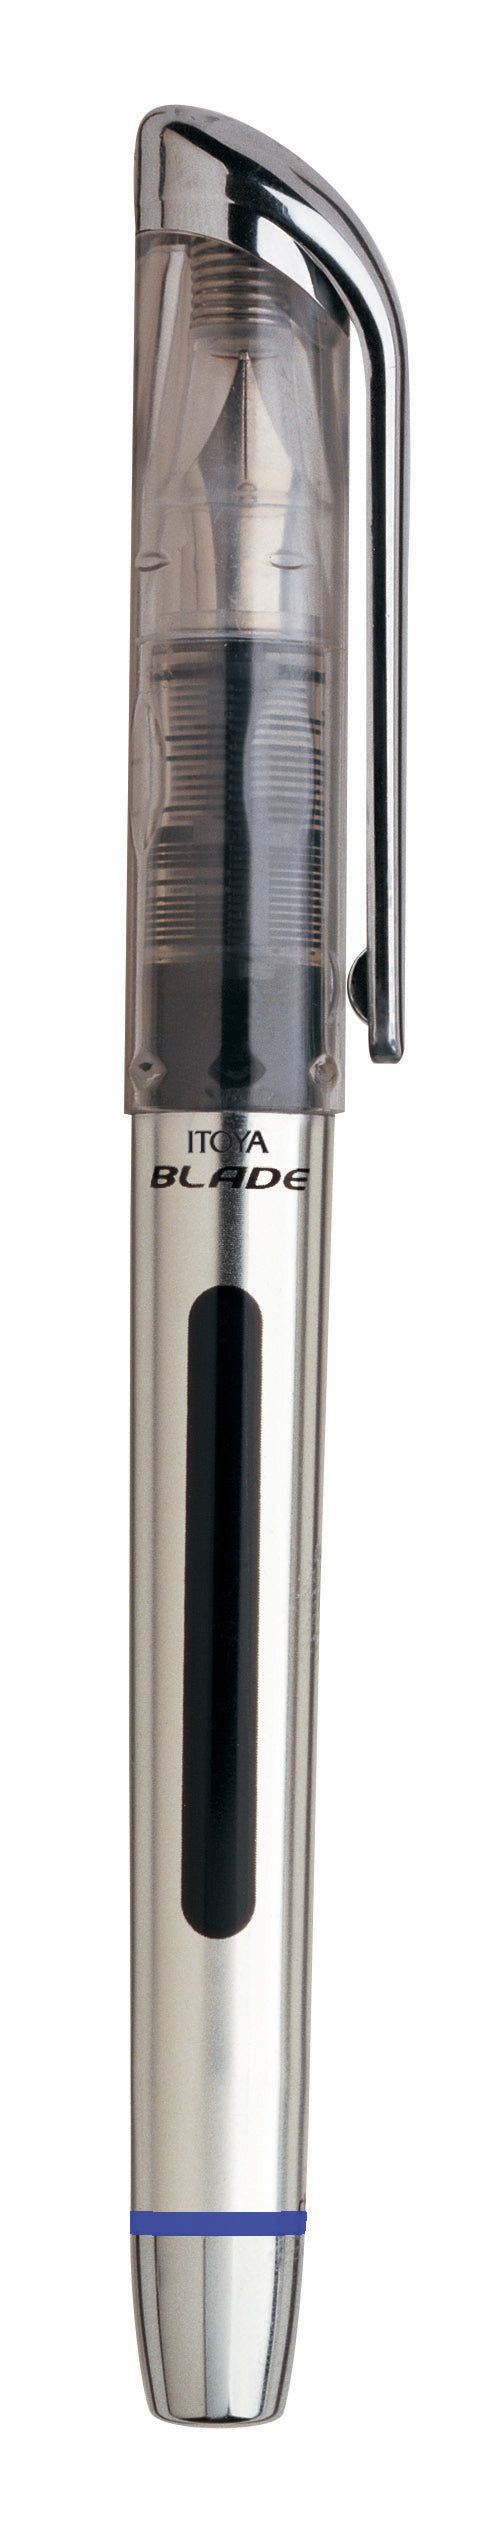 Itoya Blade Ready-To-Write Fountain Pen